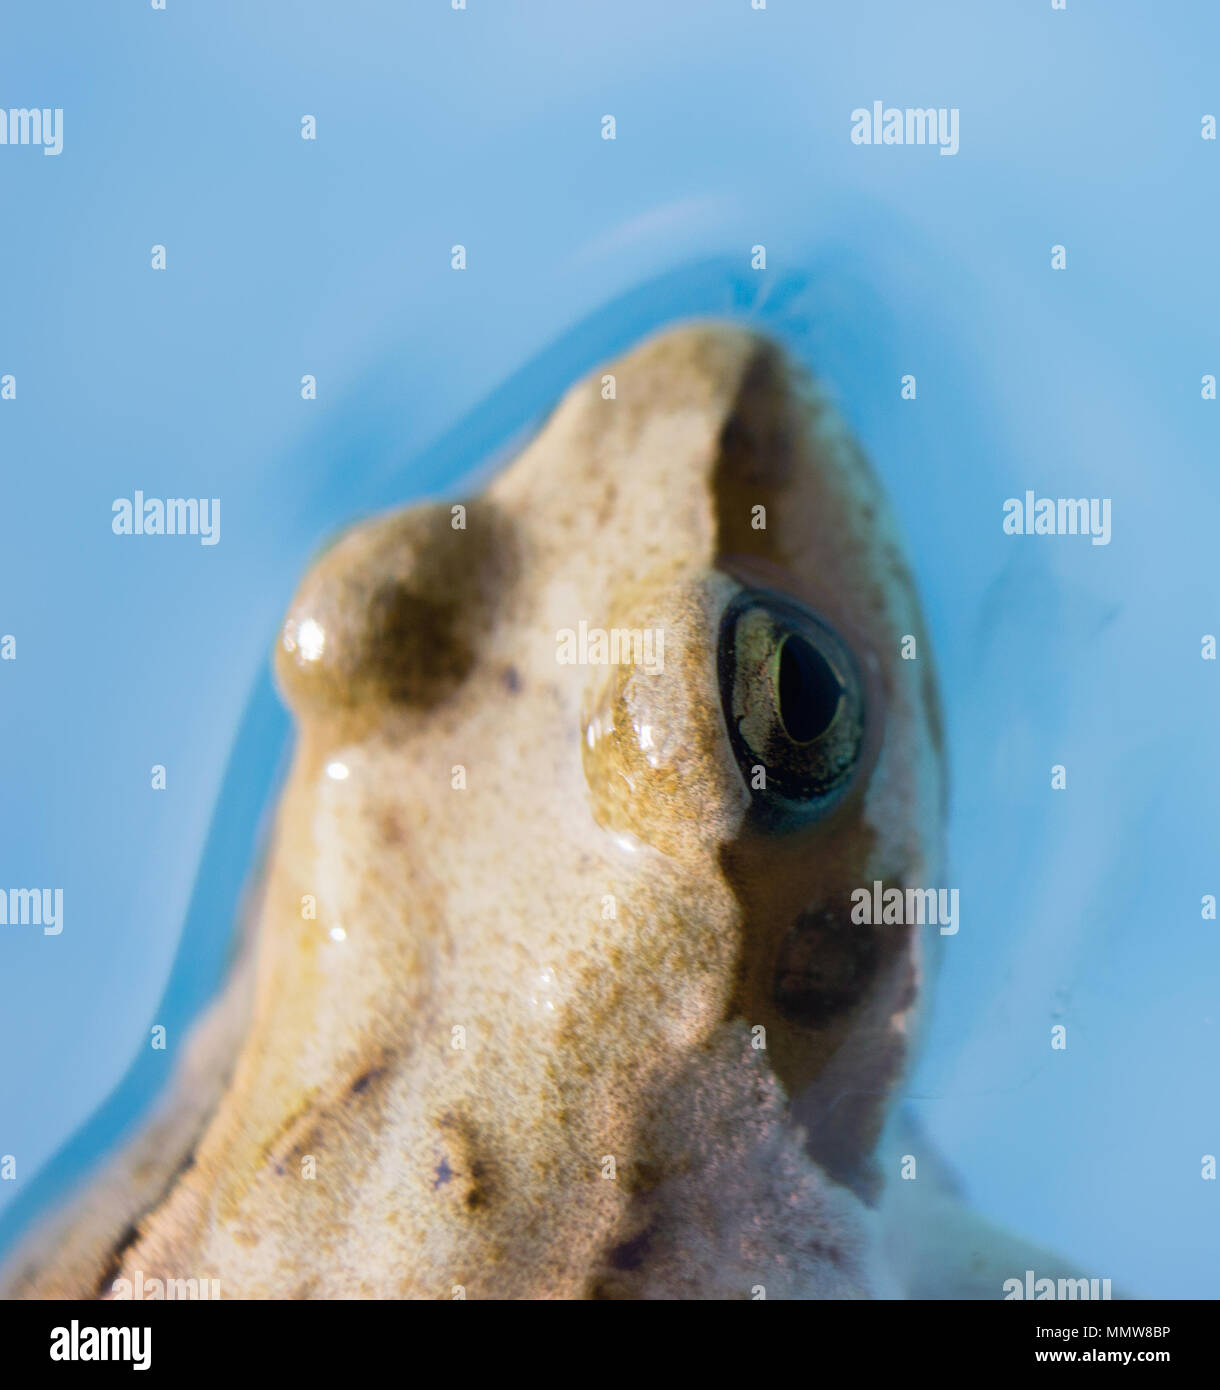 Détail de la tête de grenouille dans l'eau. La grenouille rousse Rana temporaria - semi-aquatique est un amphibien de la famille des ranidés Banque D'Images